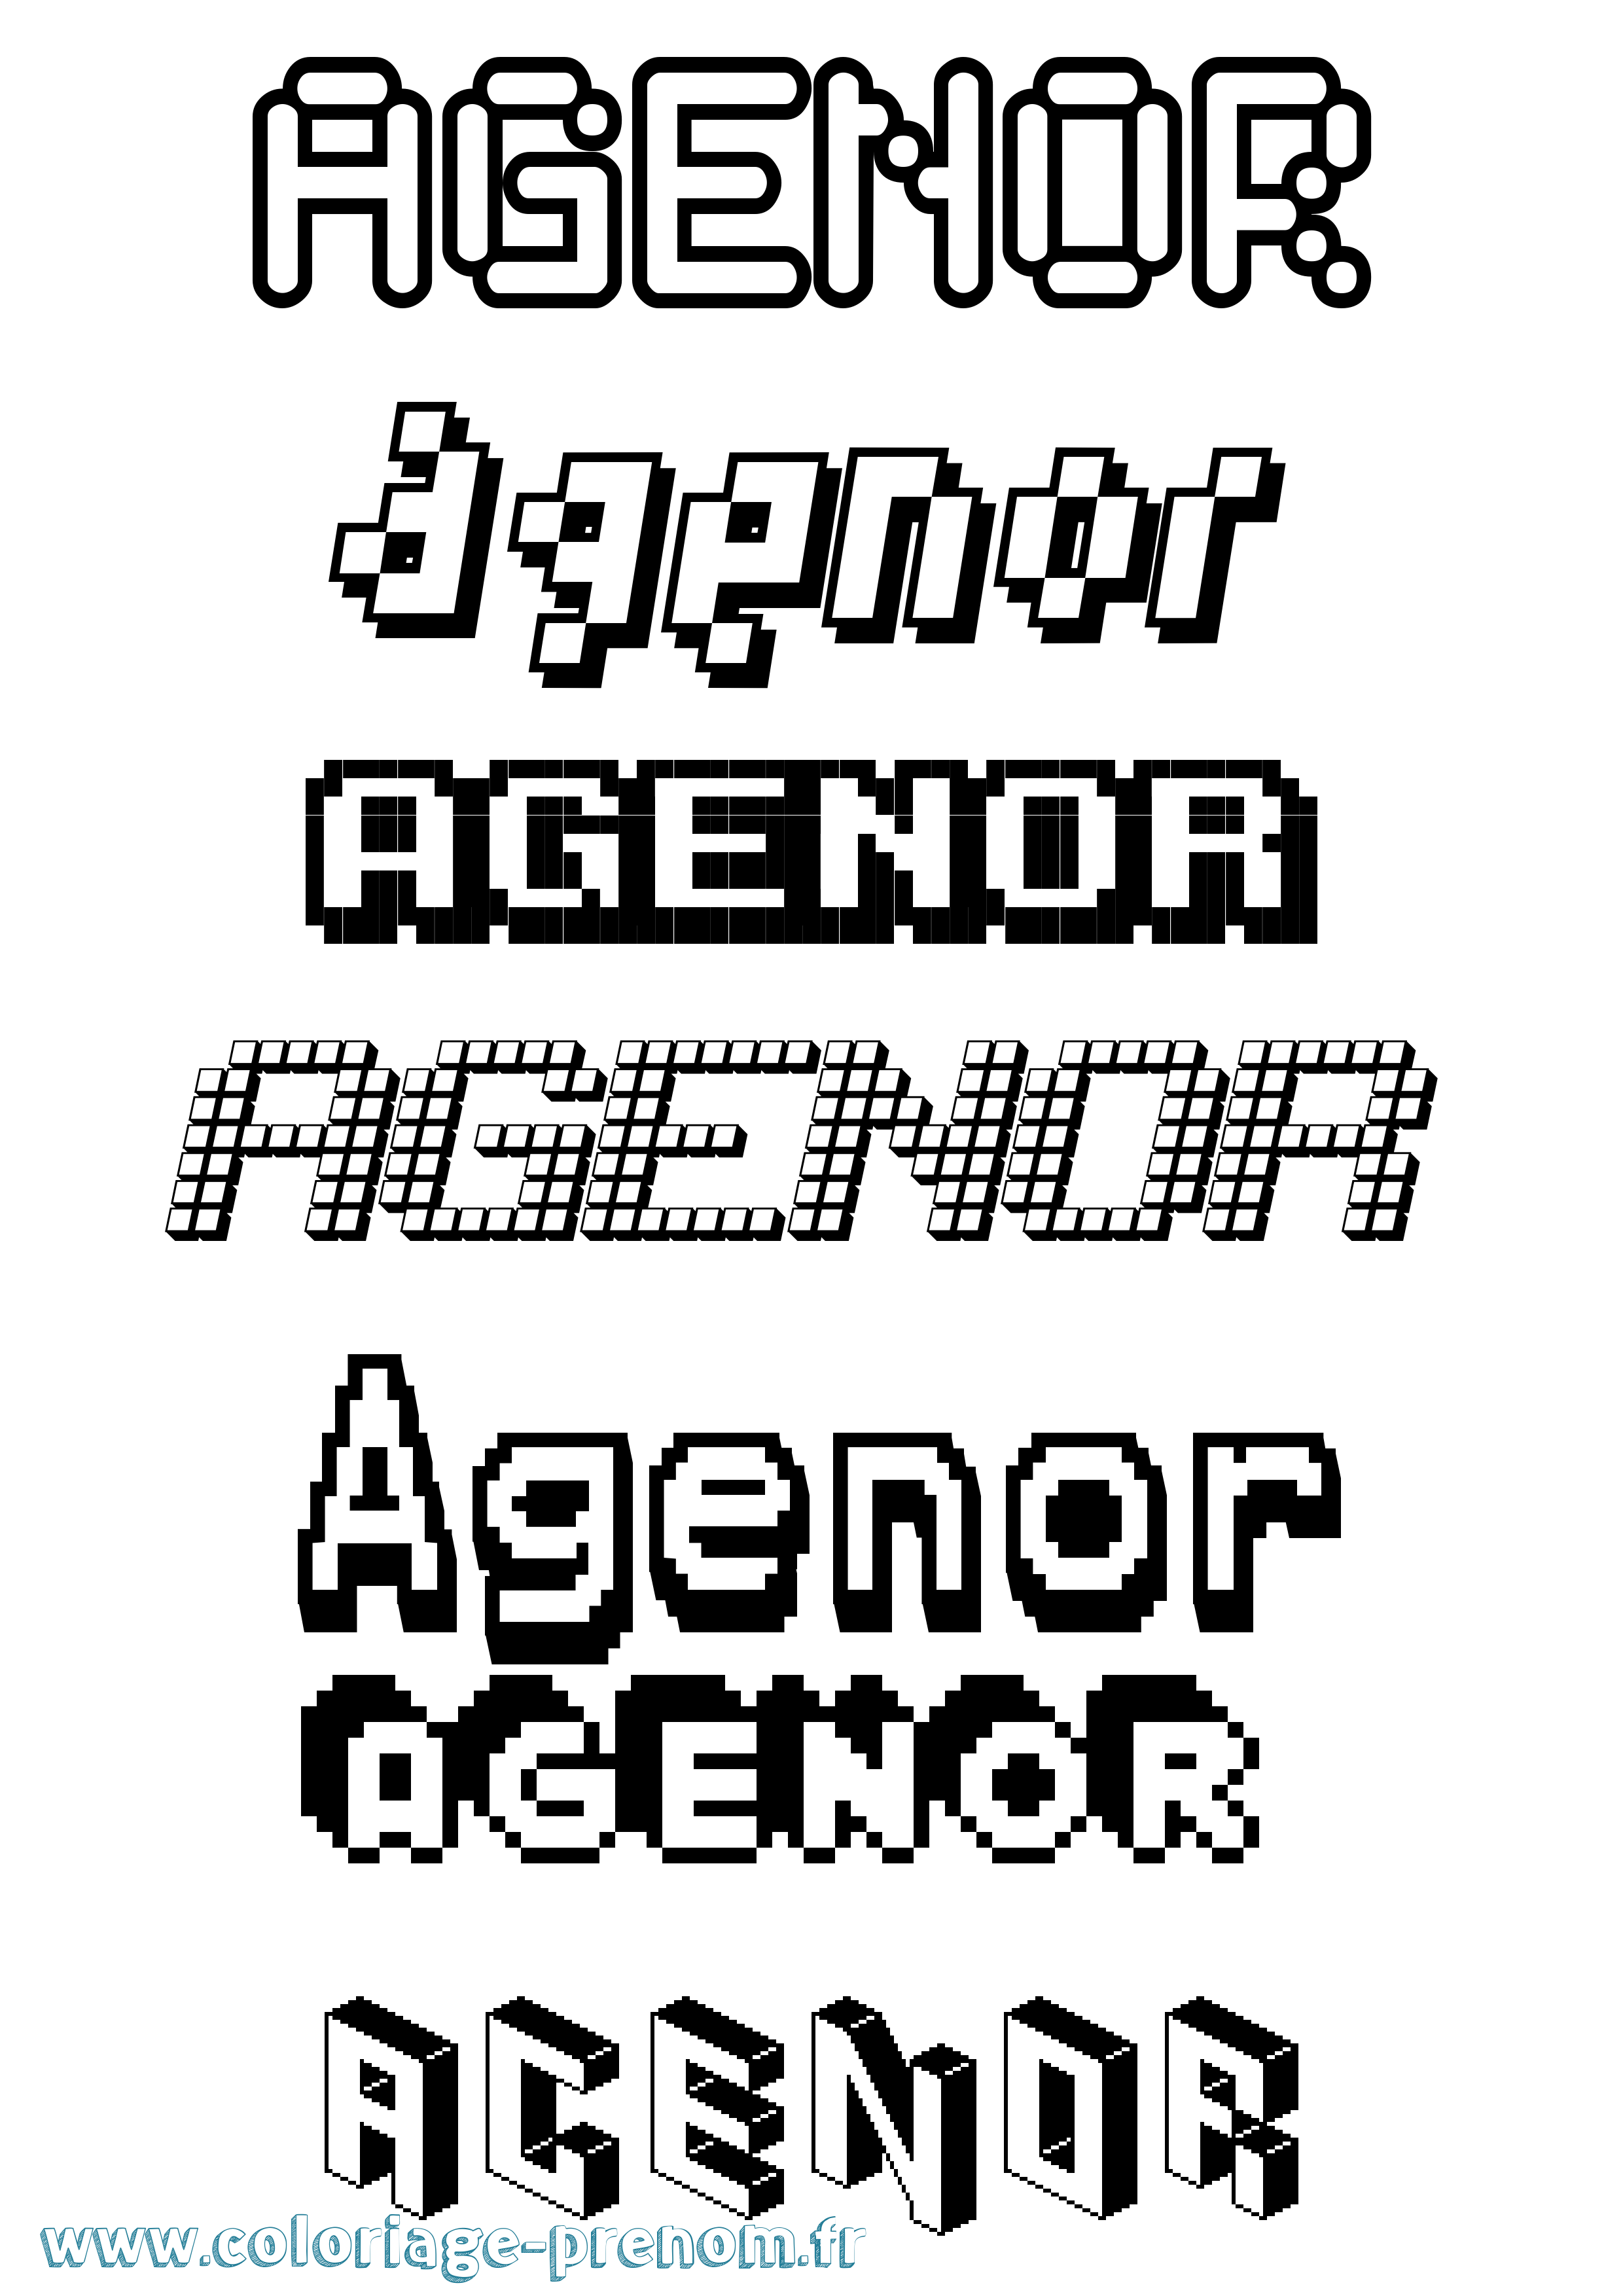 Coloriage prénom Agenor Pixel